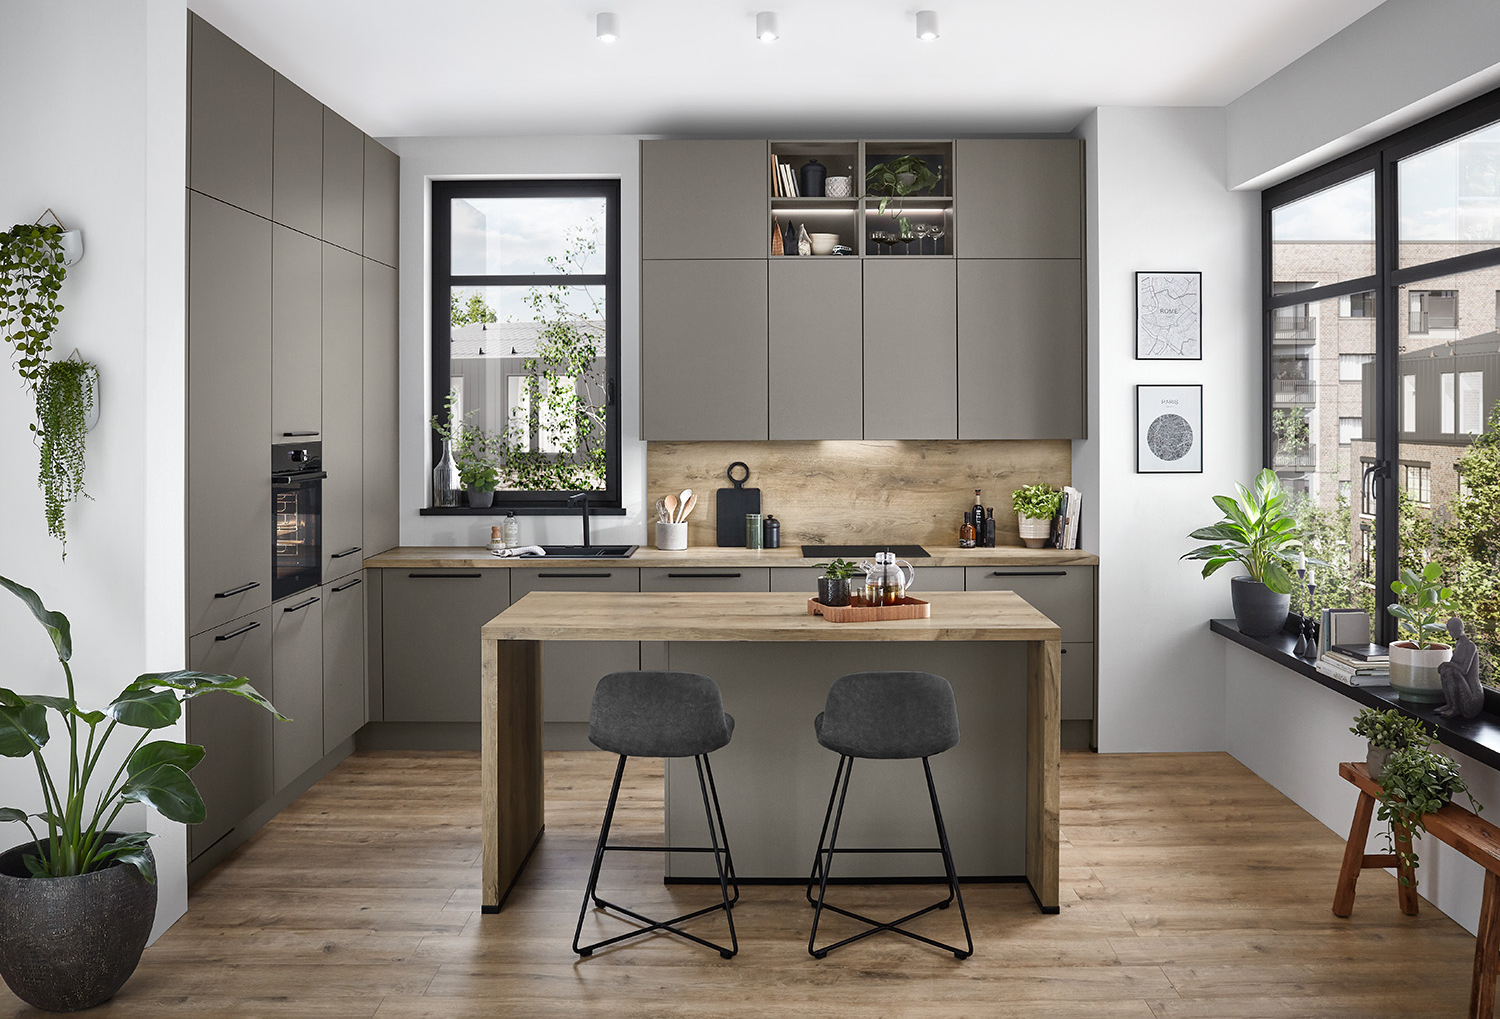 Moderní design kuchyně s elegantními šedými skříňkami, dřevěnými doplňky, vestavěnými spotřebiči a centrálním ostrovem se židlemi, osvětlený přirozeným světlem z velkých oken.